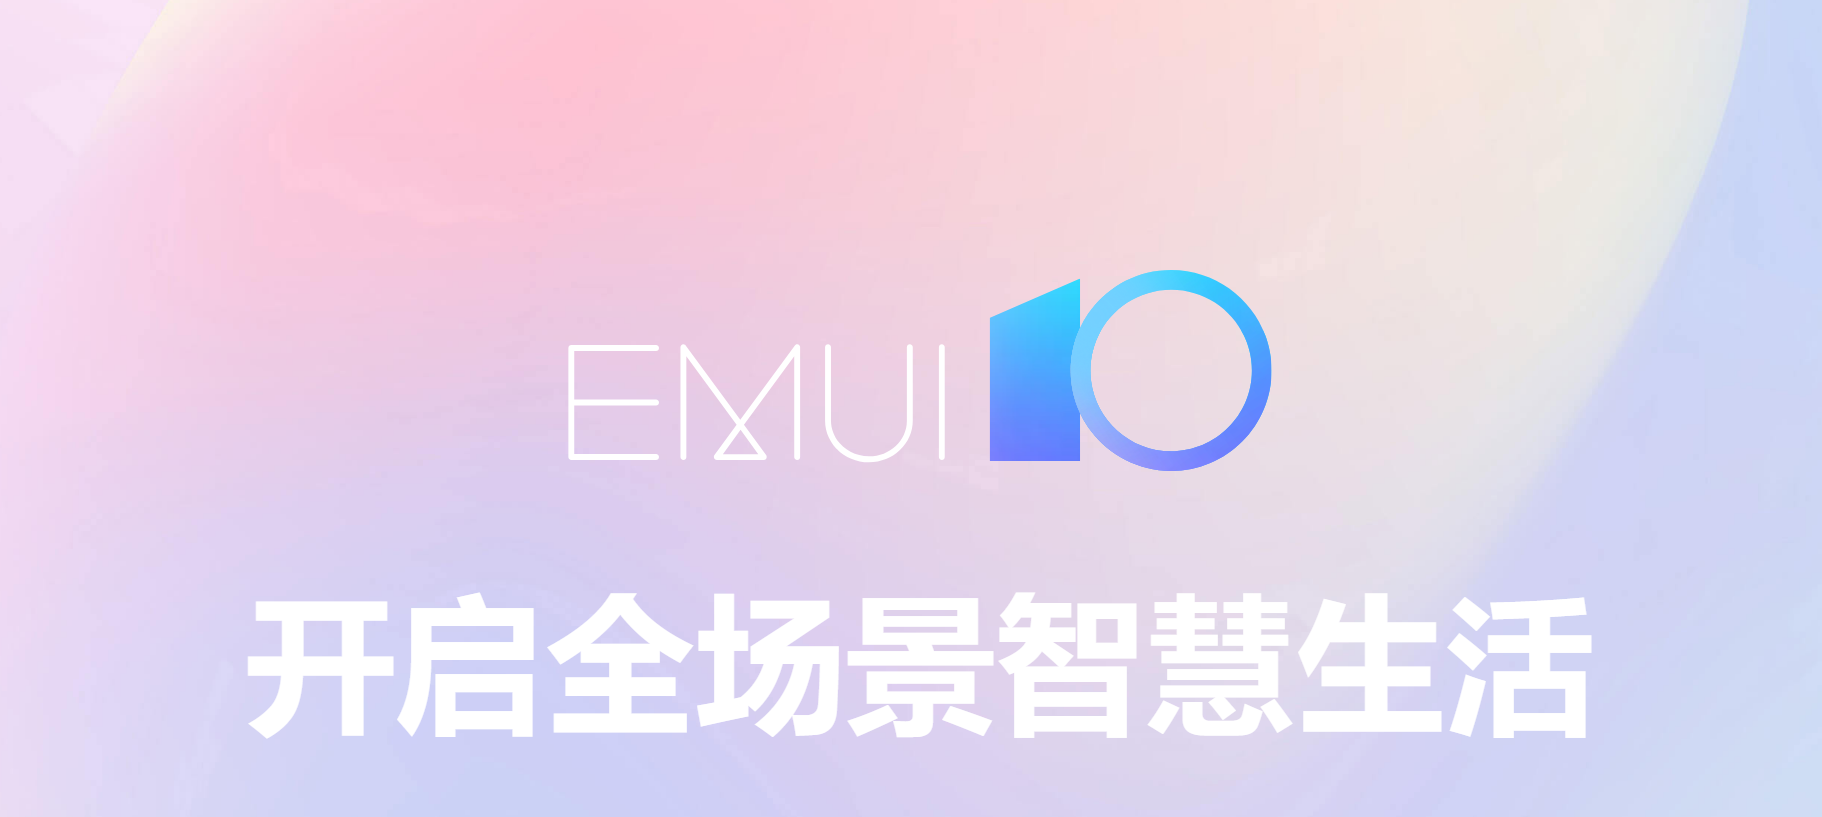 对抗iOS 13：华为正式推出EMUI 10